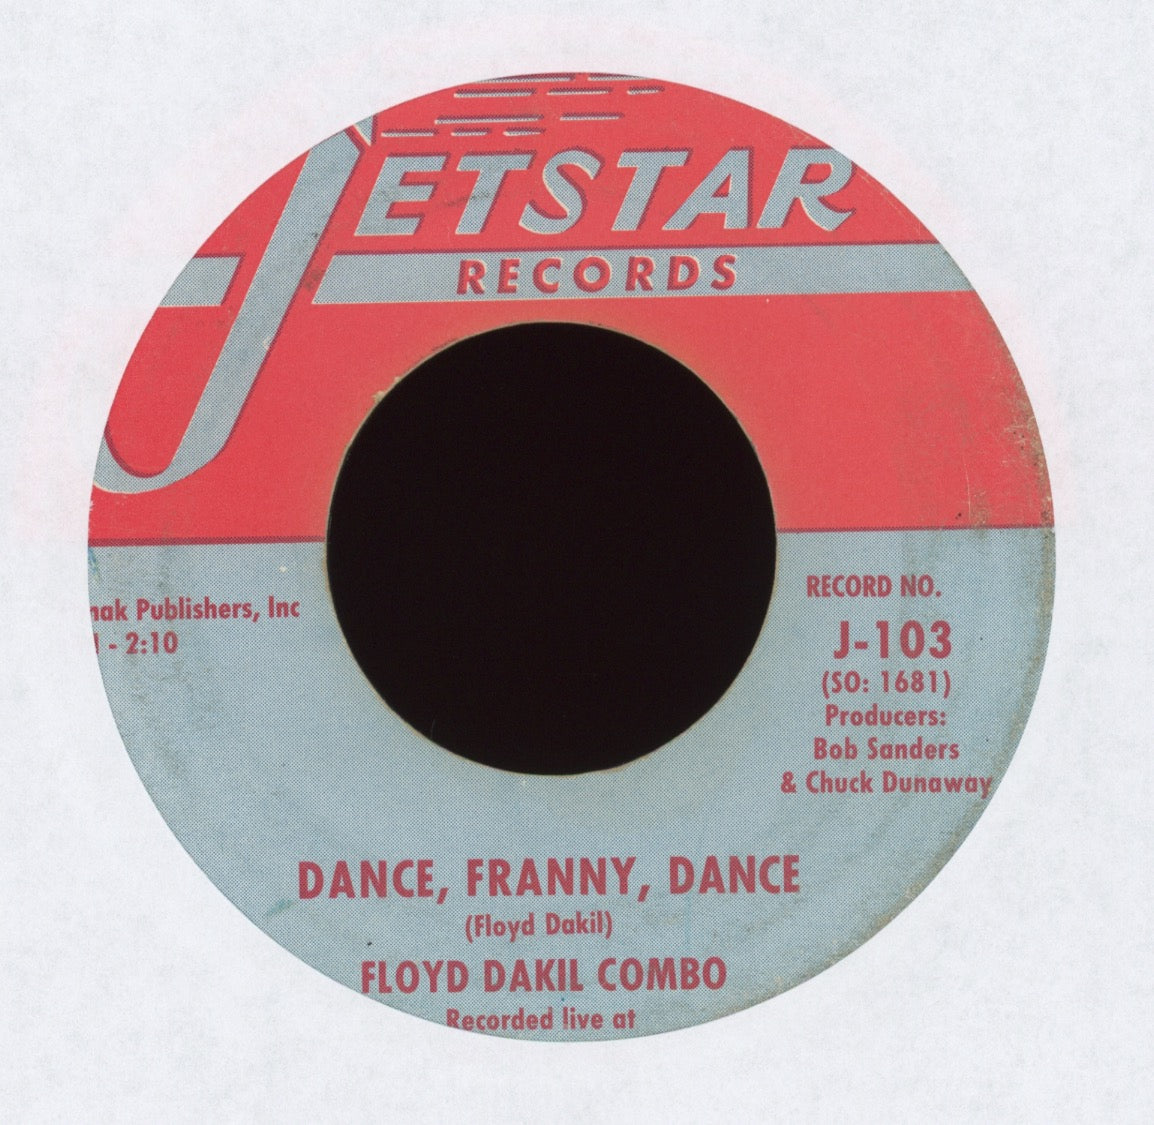 Floyd Dakil Combo - Dance, Franny, Dance on Jetstar